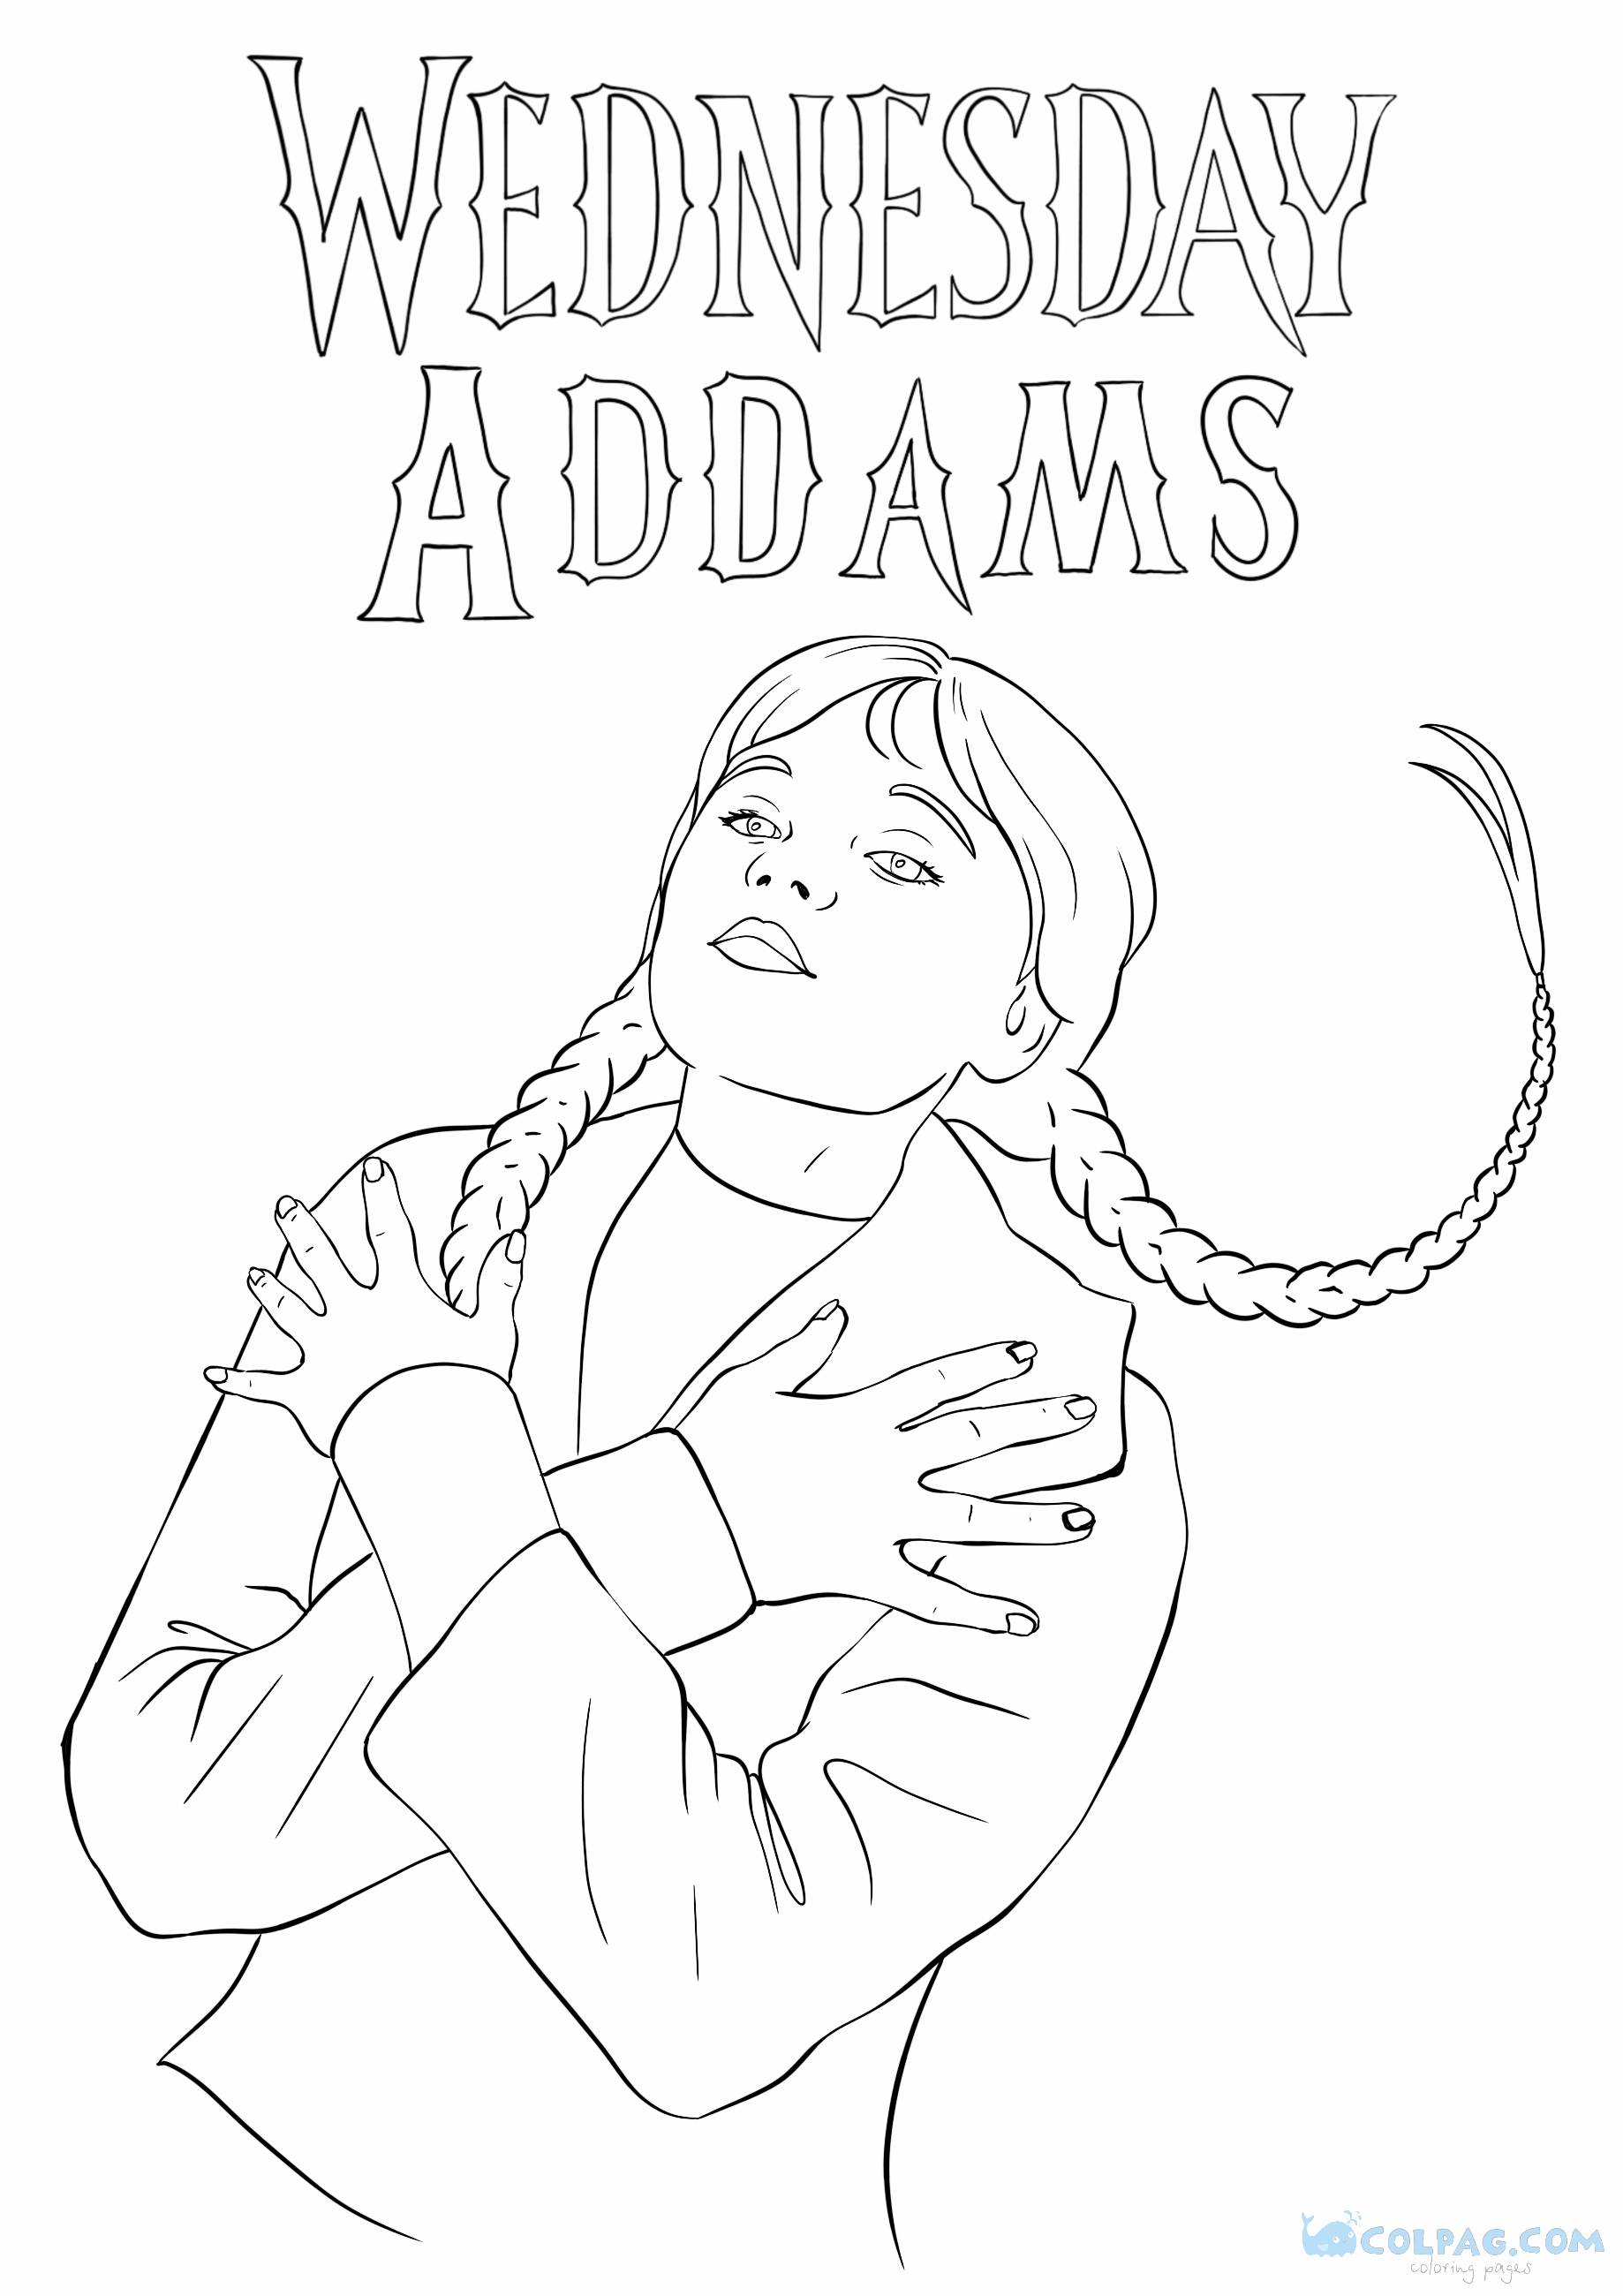 Desenhos para colorir de Wednesday Addams